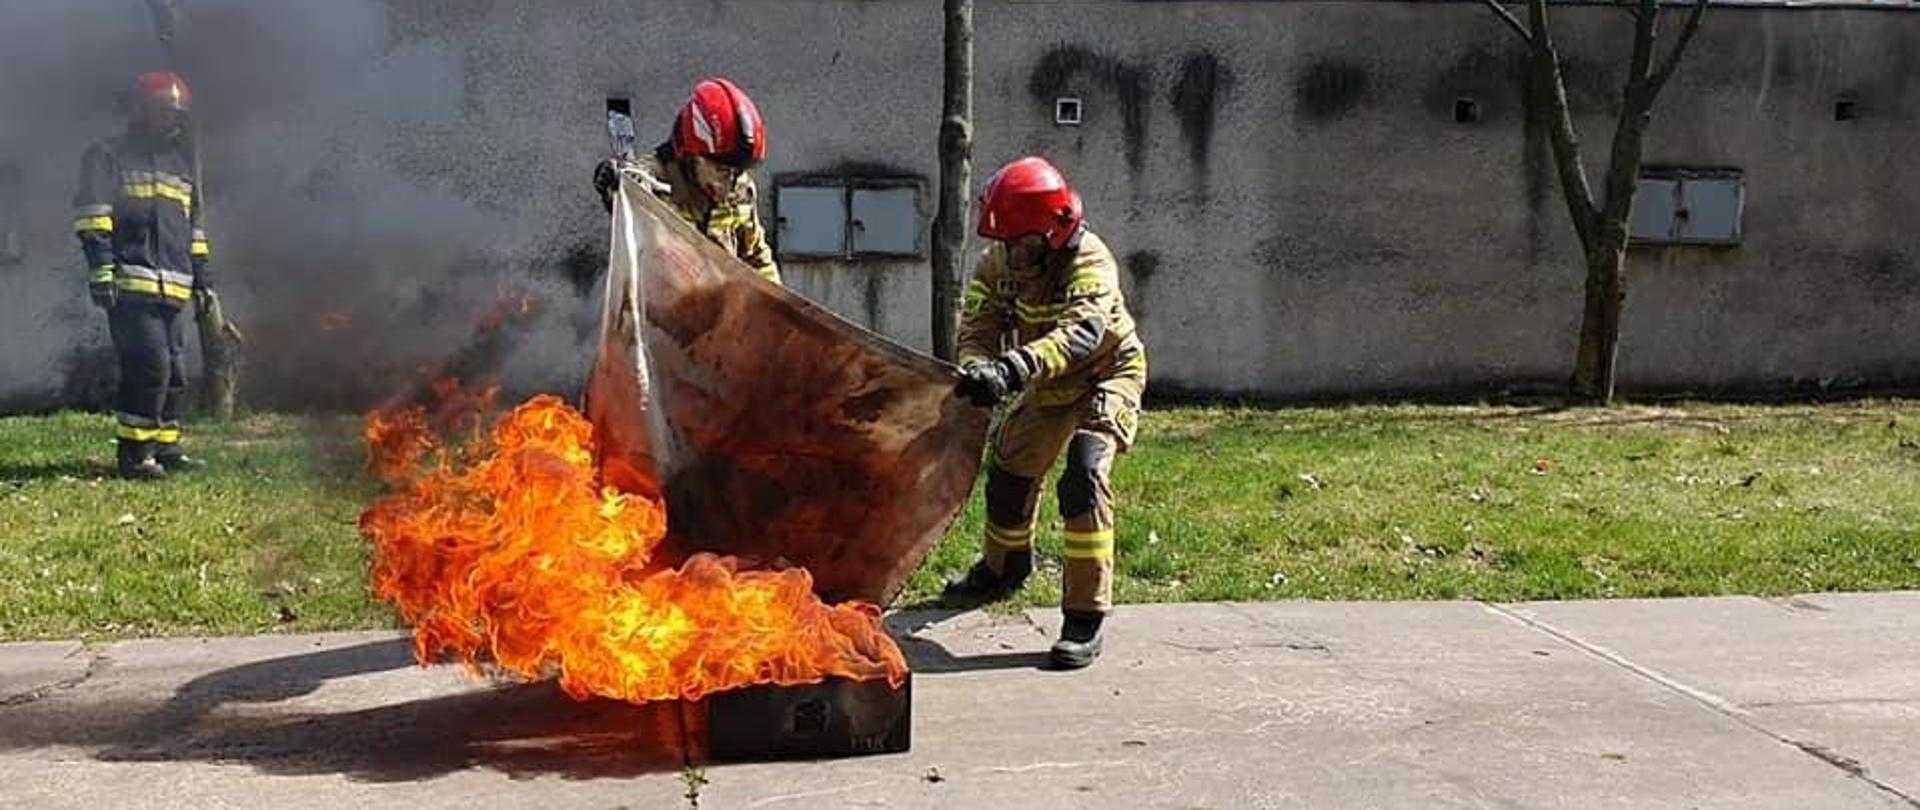 Na zdjęciu dwóch strażaków przy pomocy koca gaśniczego próbuje ugasić wysoki na około 1 m płomień. W tle stoi strazak, który przygląda się temu działaniu.